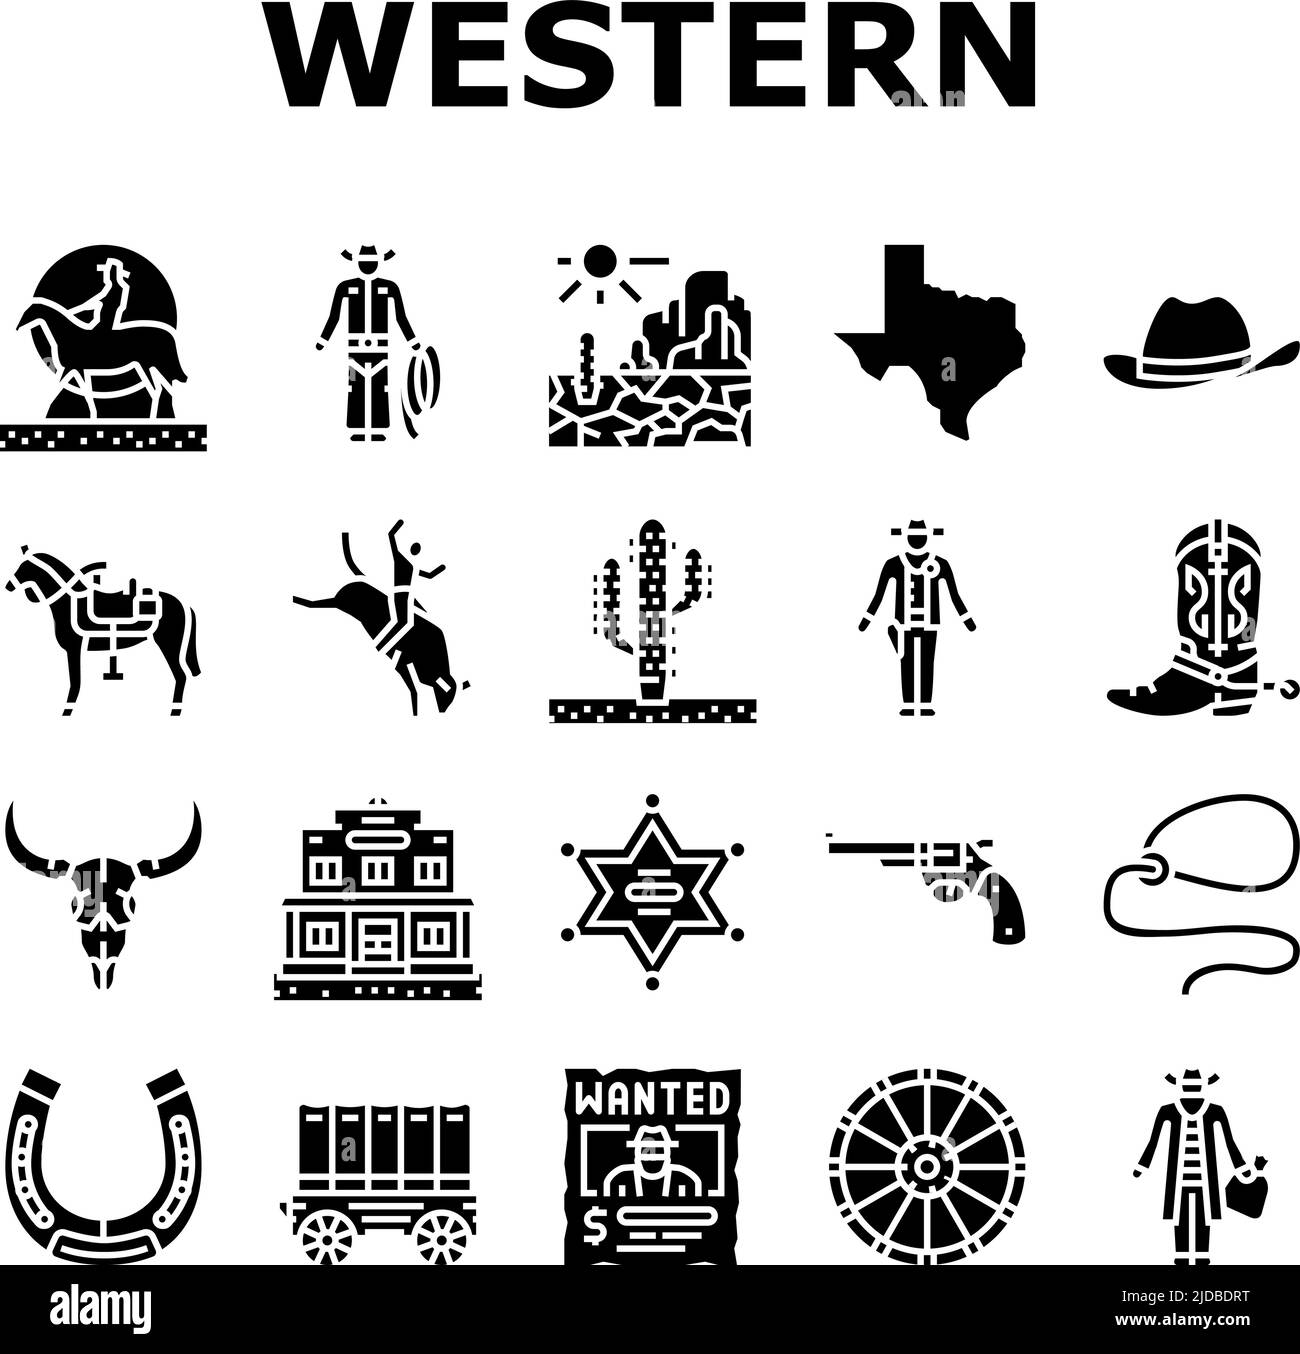 Western Cowboy e Sheriff Man icone Set Vector Illustrazione Vettoriale